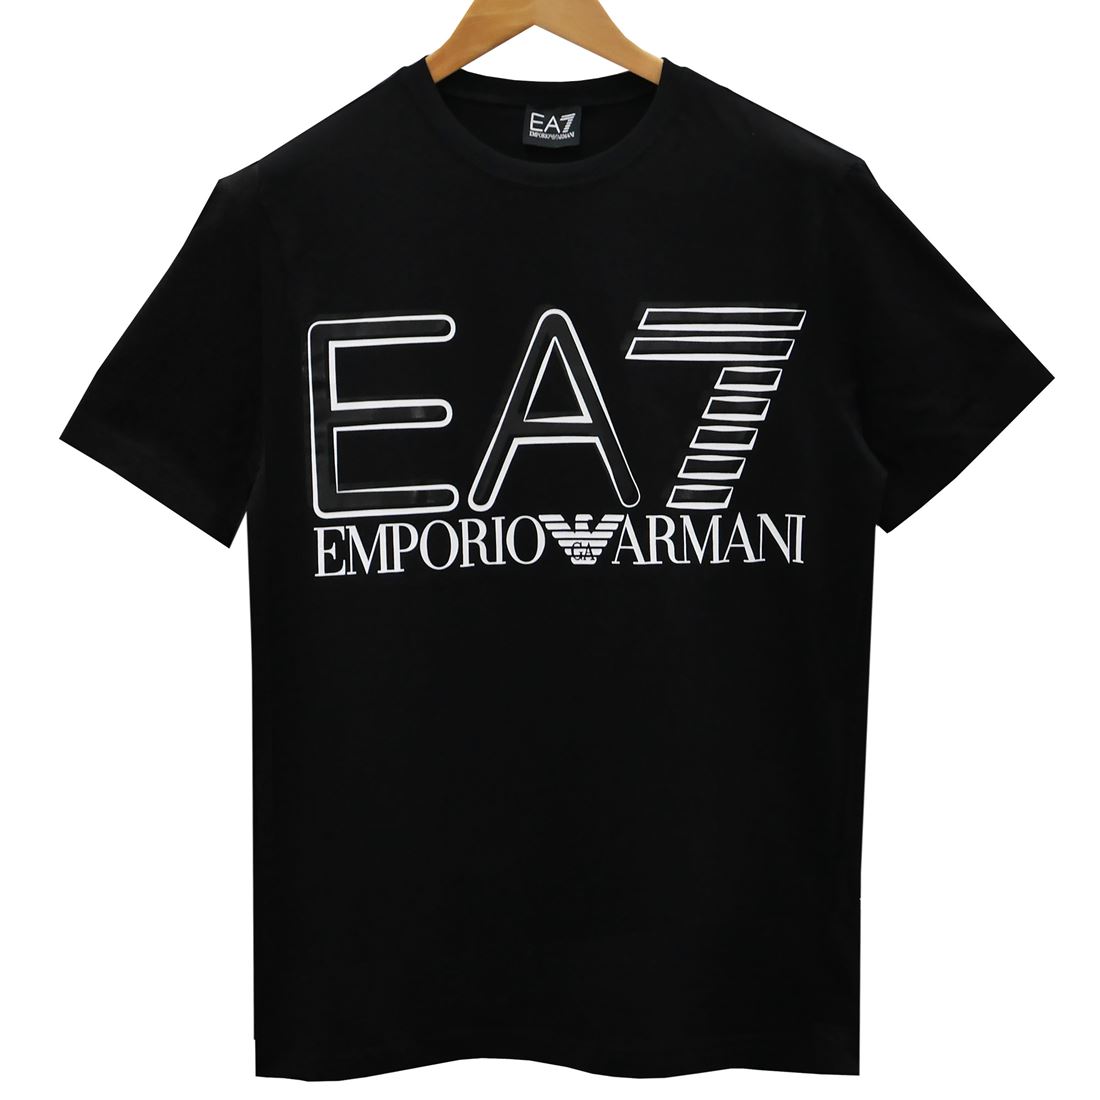 EA7 EMPORIO ARMANI エンポリオアルマーニ 半袖Tシャツ 3LPT20/PJFFZ 1200 BLACK ブラック スポーツライン エアセッテ メンズ 男性用 高級 人気 ブランド おしゃれ おすすめ シンプル